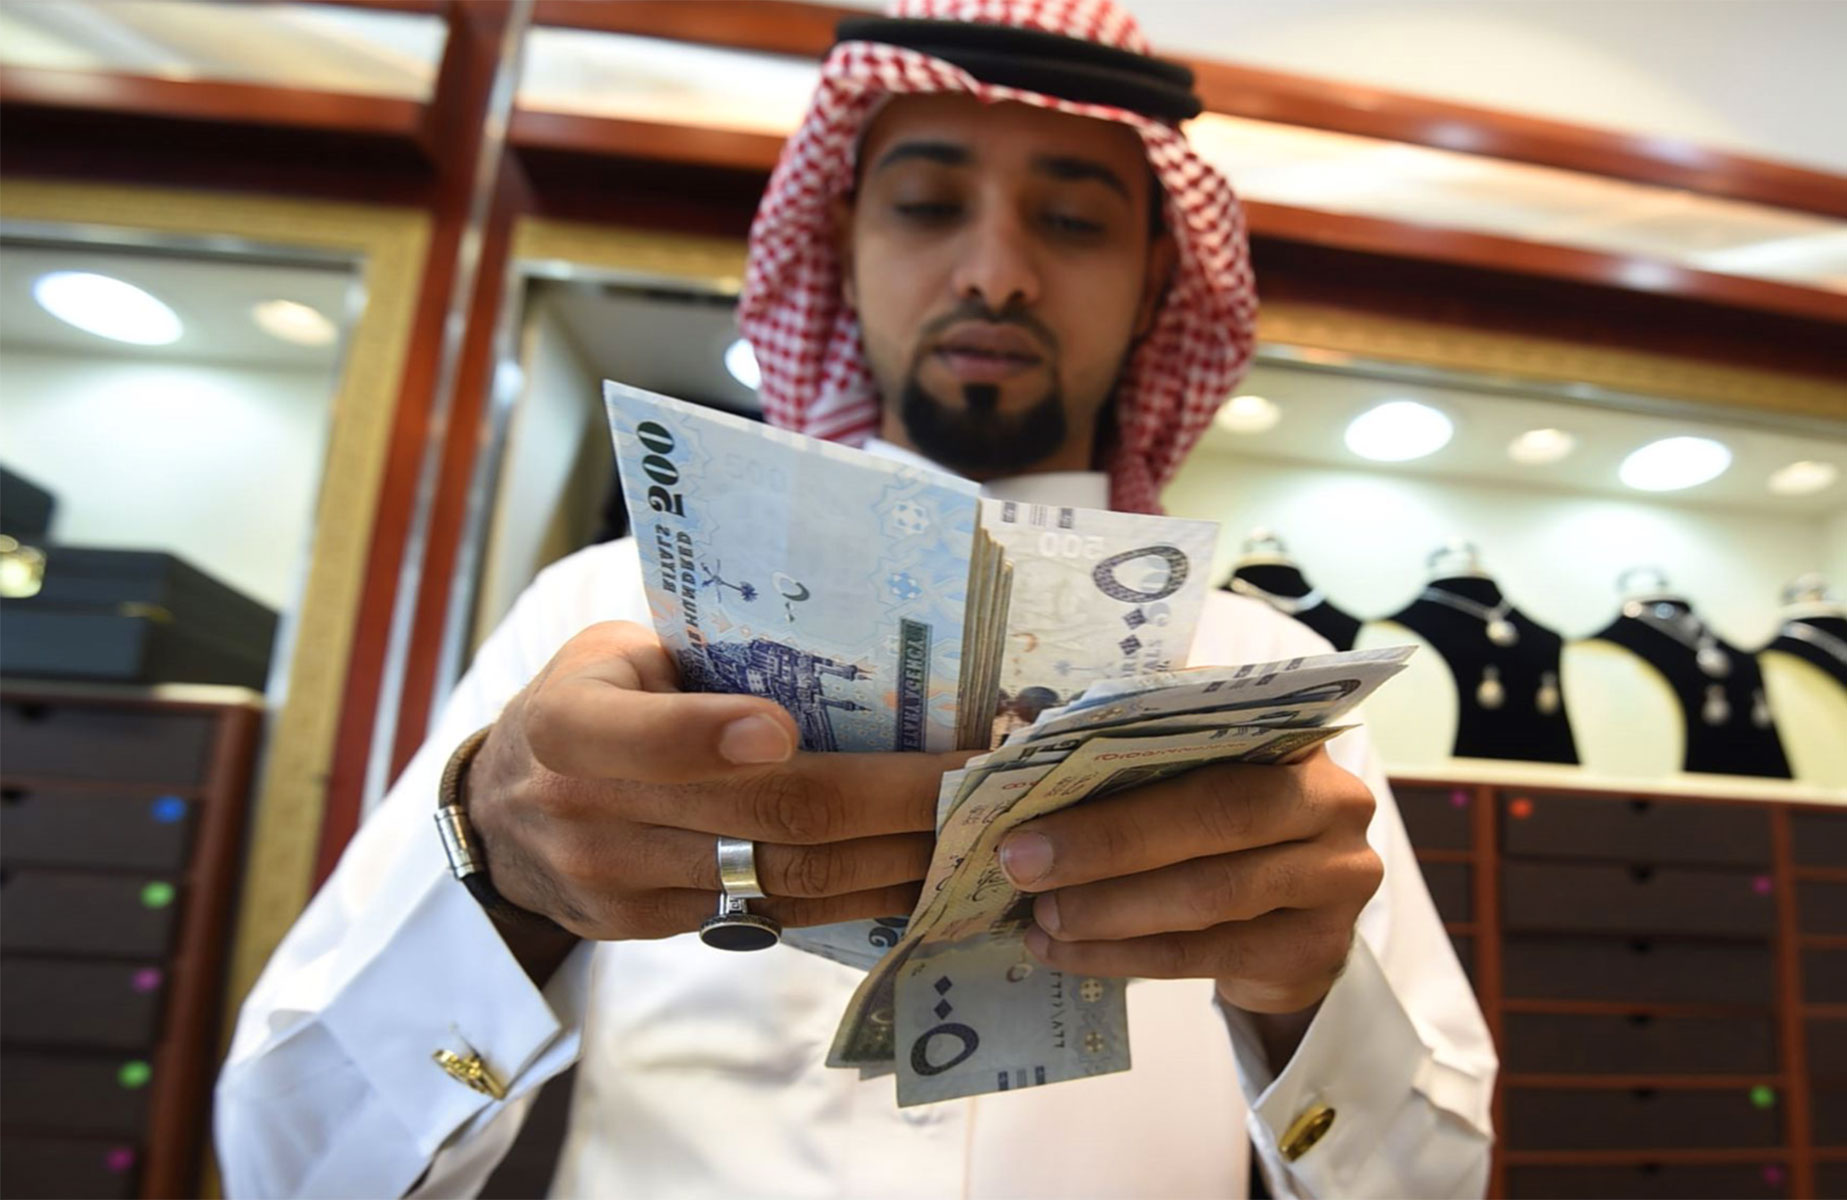 تمويل شخصي من بنك البلاد 1443 يصل إلي 2 مليون ريال سعودي فترة سداد مرينة بدون كفيل بالمملكة